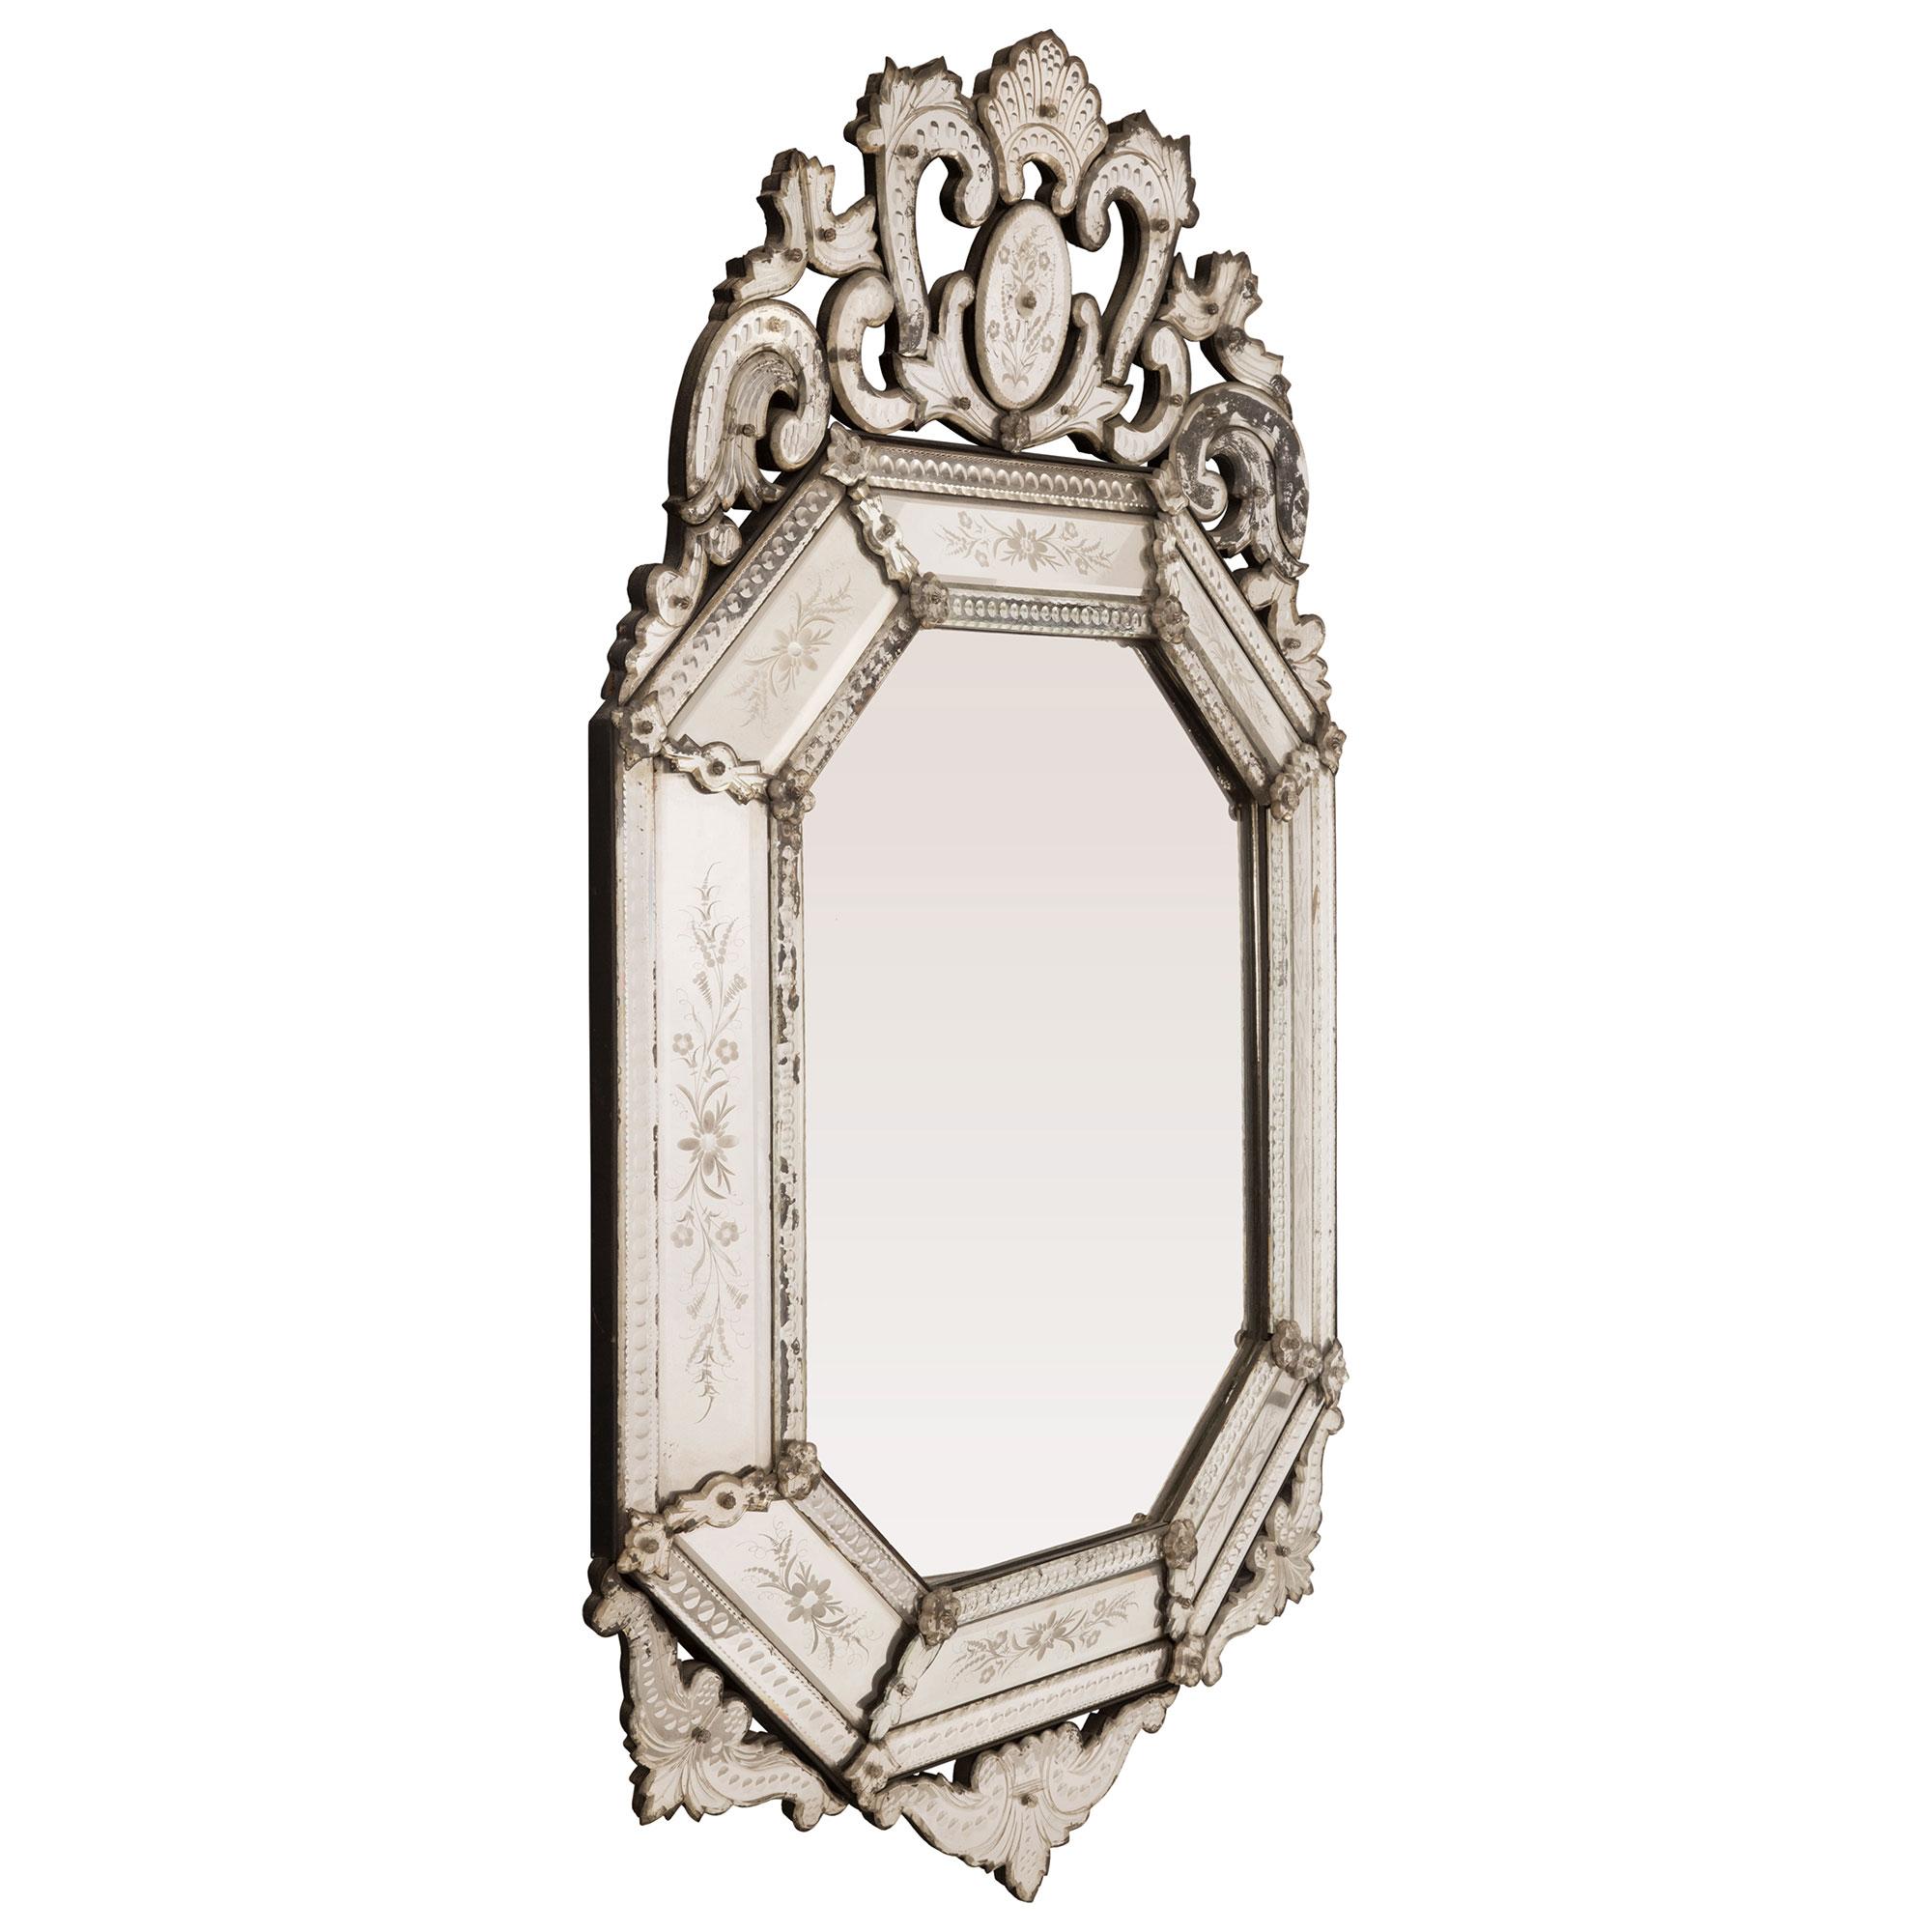 Eine atemberaubende italienische Jahrhundertwende venezianischen st. Doppel-gerahmten Spiegel. Der achteckige Spiegel hat noch alle seine ursprünglichen Spiegelplatten, wobei die zentrale Spiegelplatte von einem schönen Perlenmuster umrahmt ist. Die